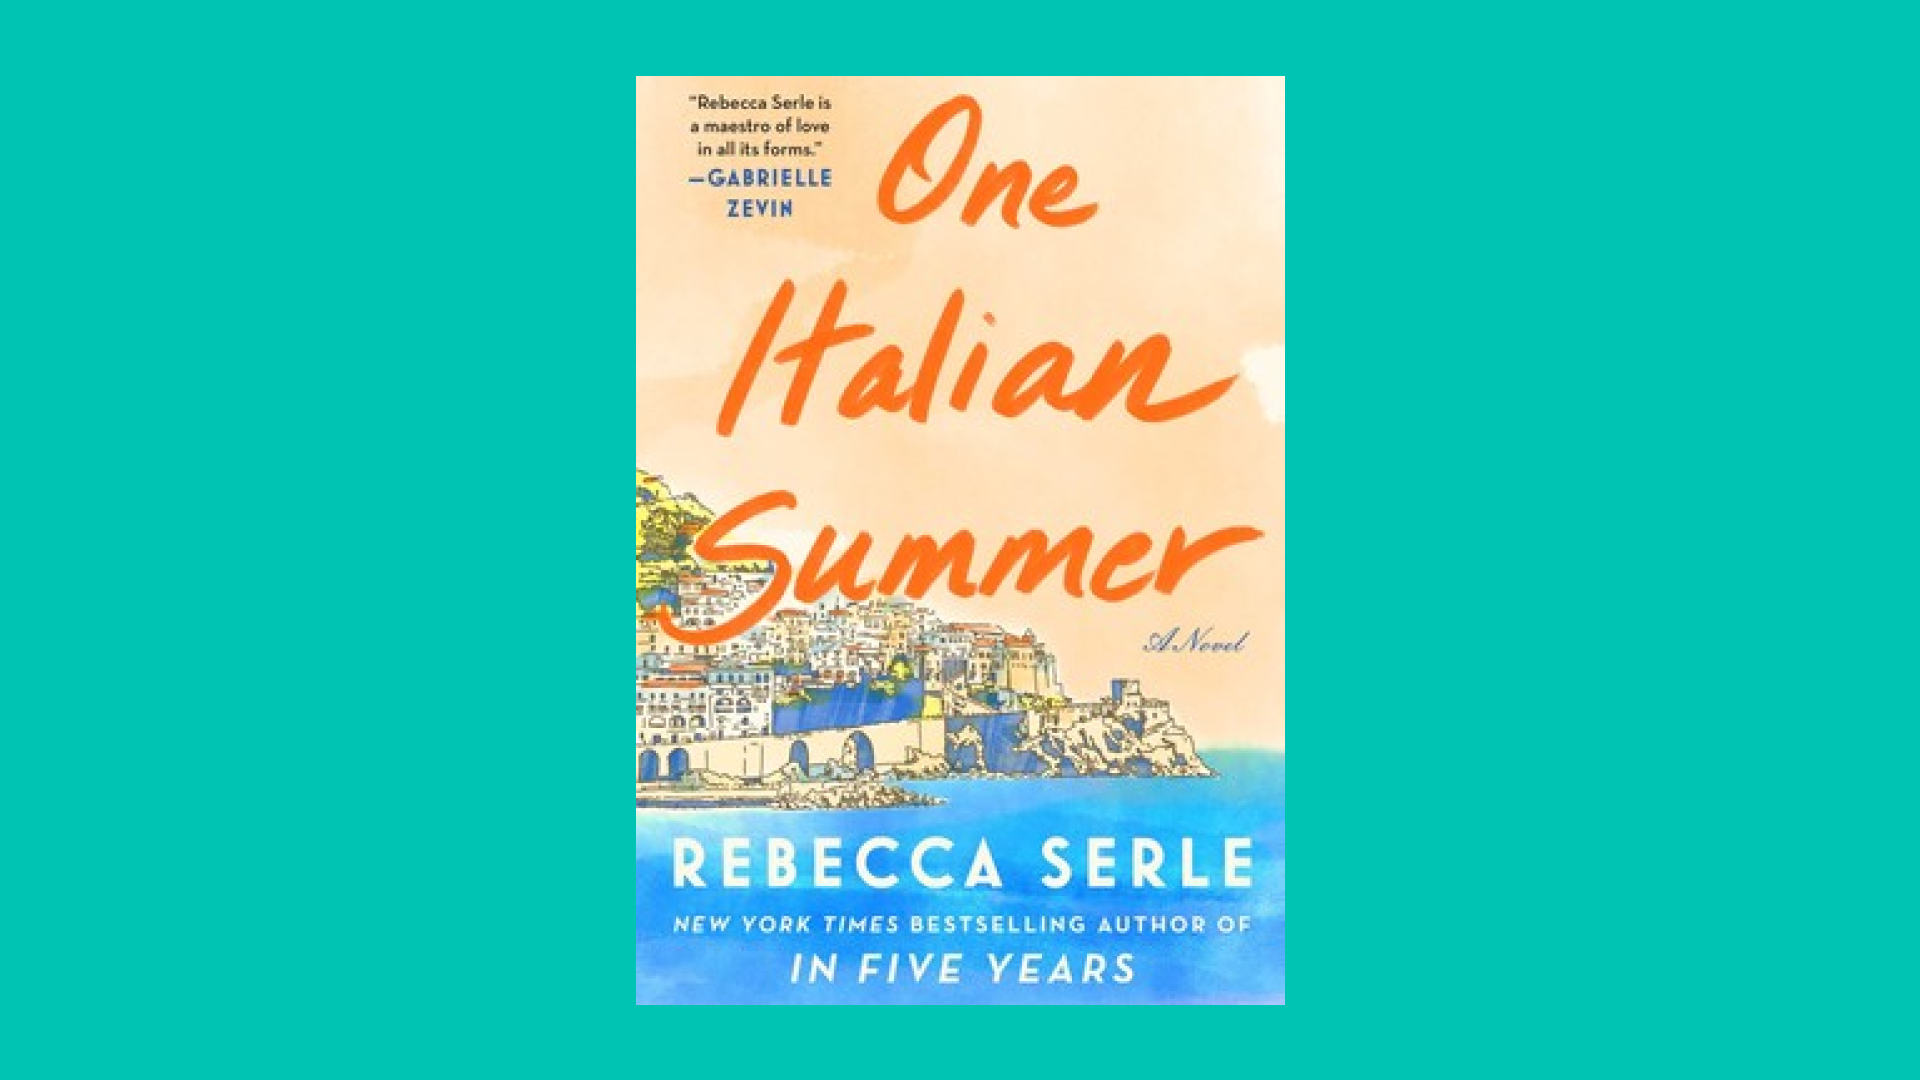 “One Italian Summer” by Rebecca Serle